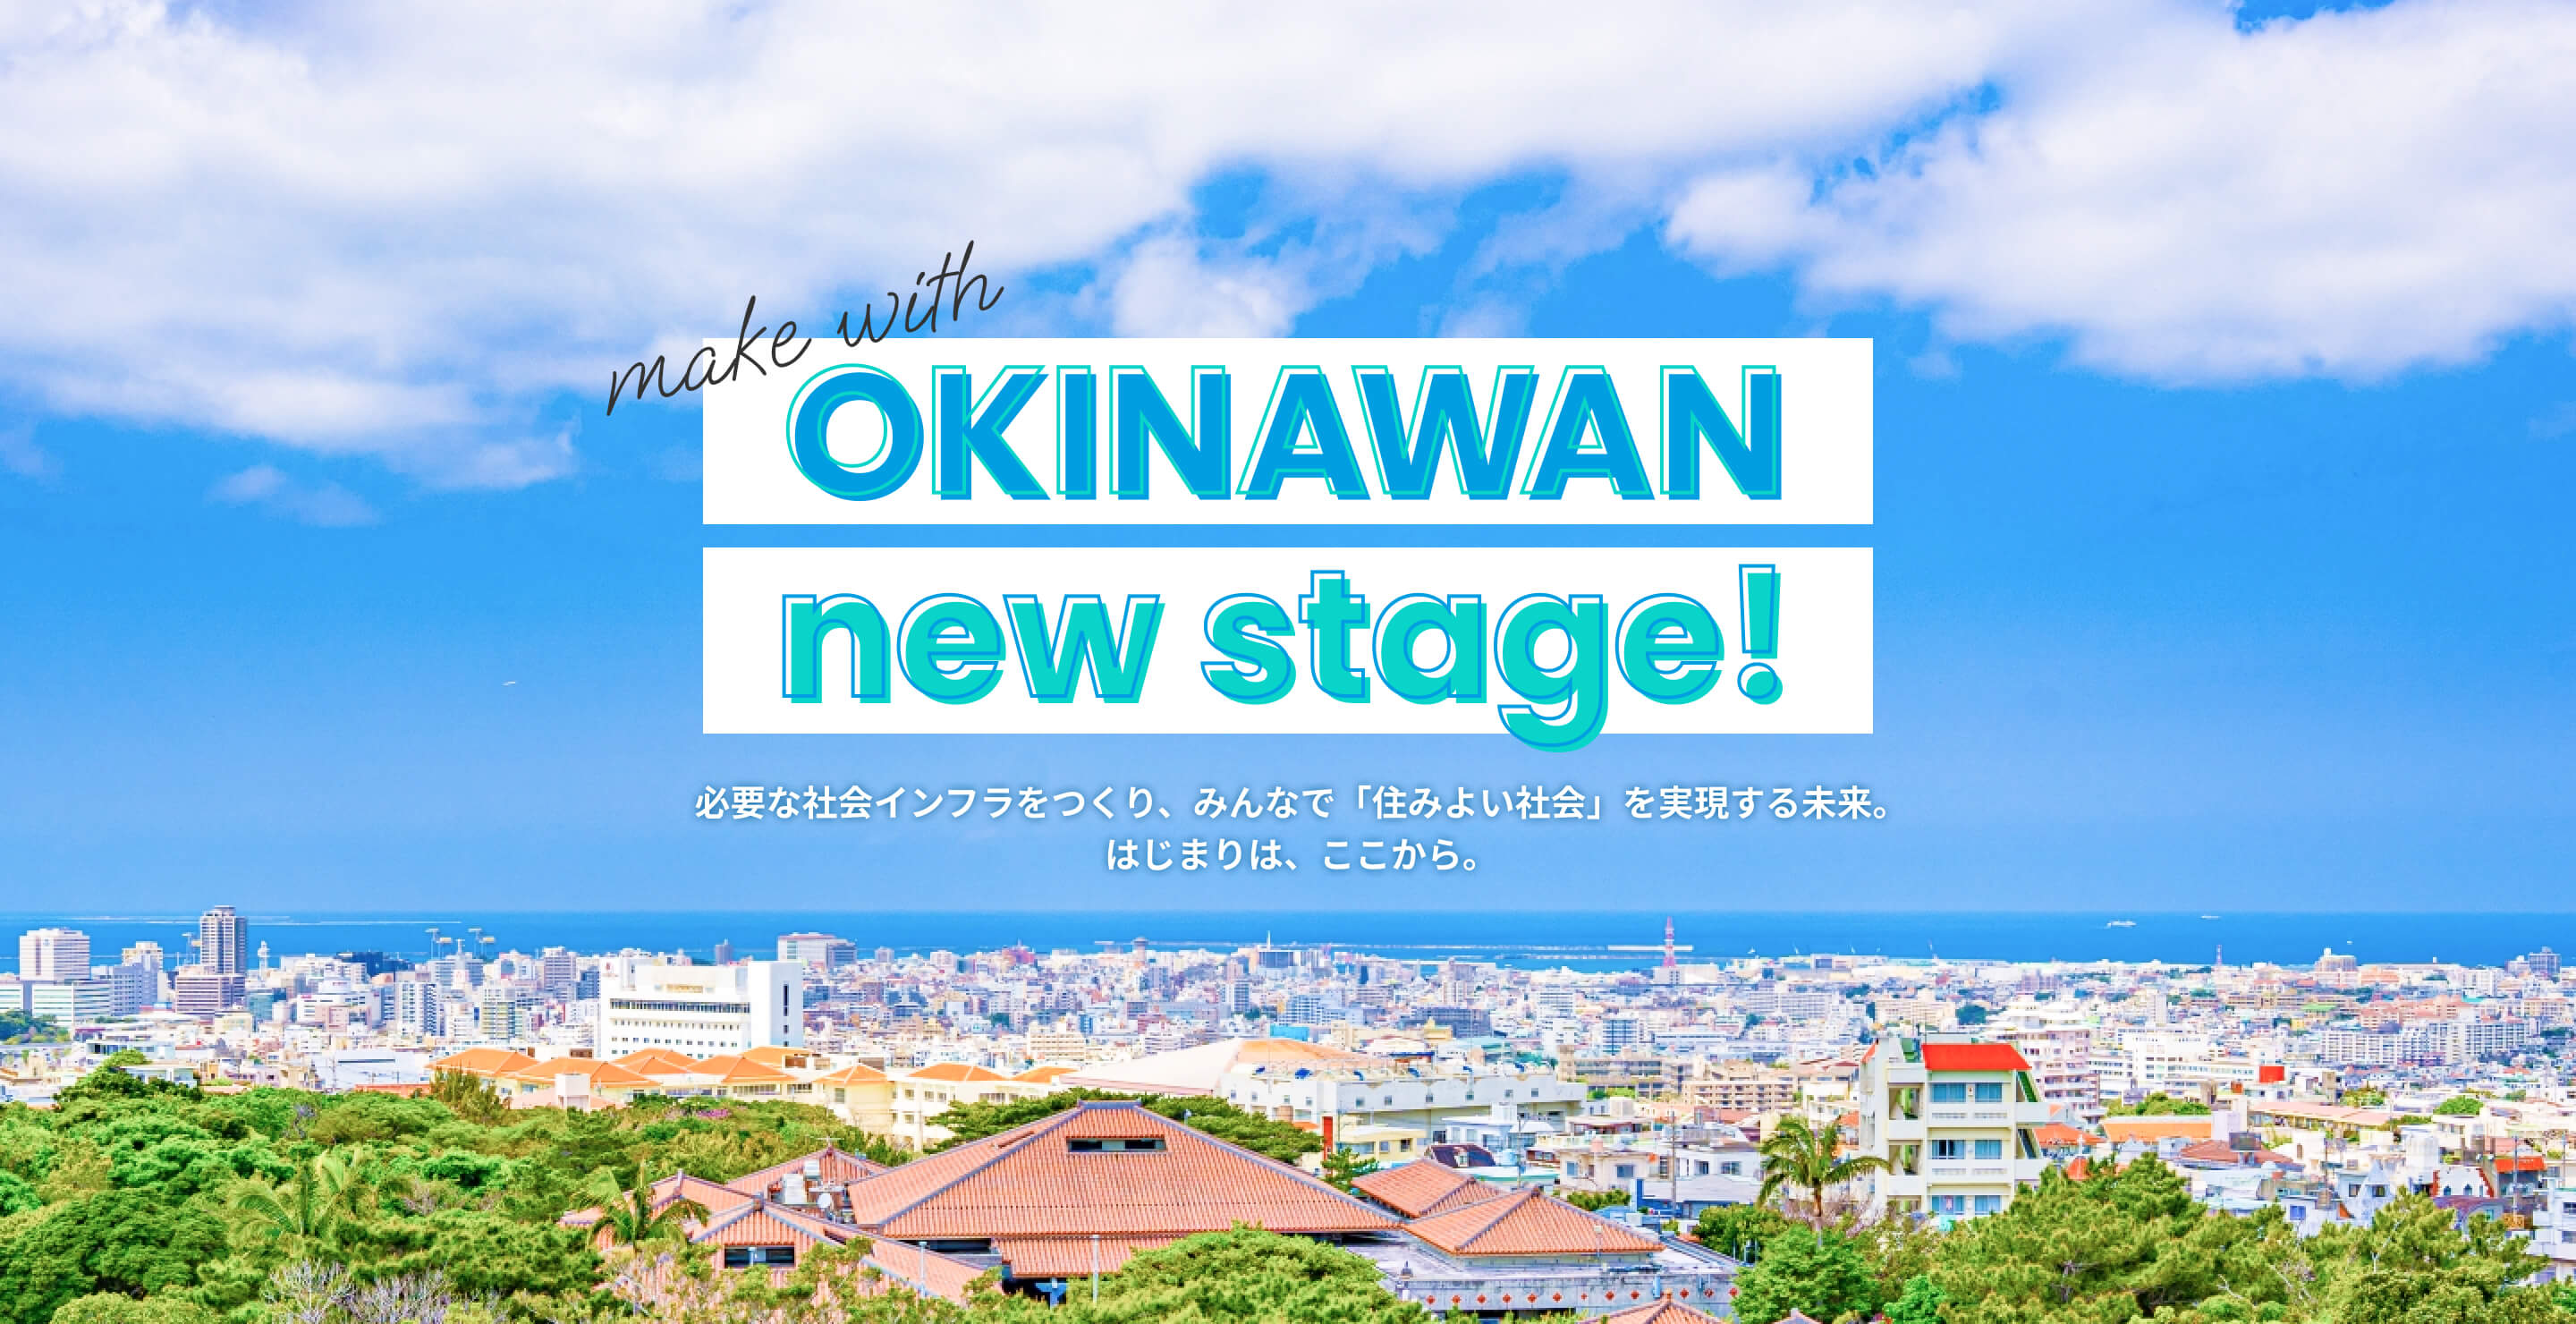 make with OKINAWAN new stage! 必要な社会インフラをつくり、みんなで「住みよい社会」を実現する未来。はじまりは、ここから。